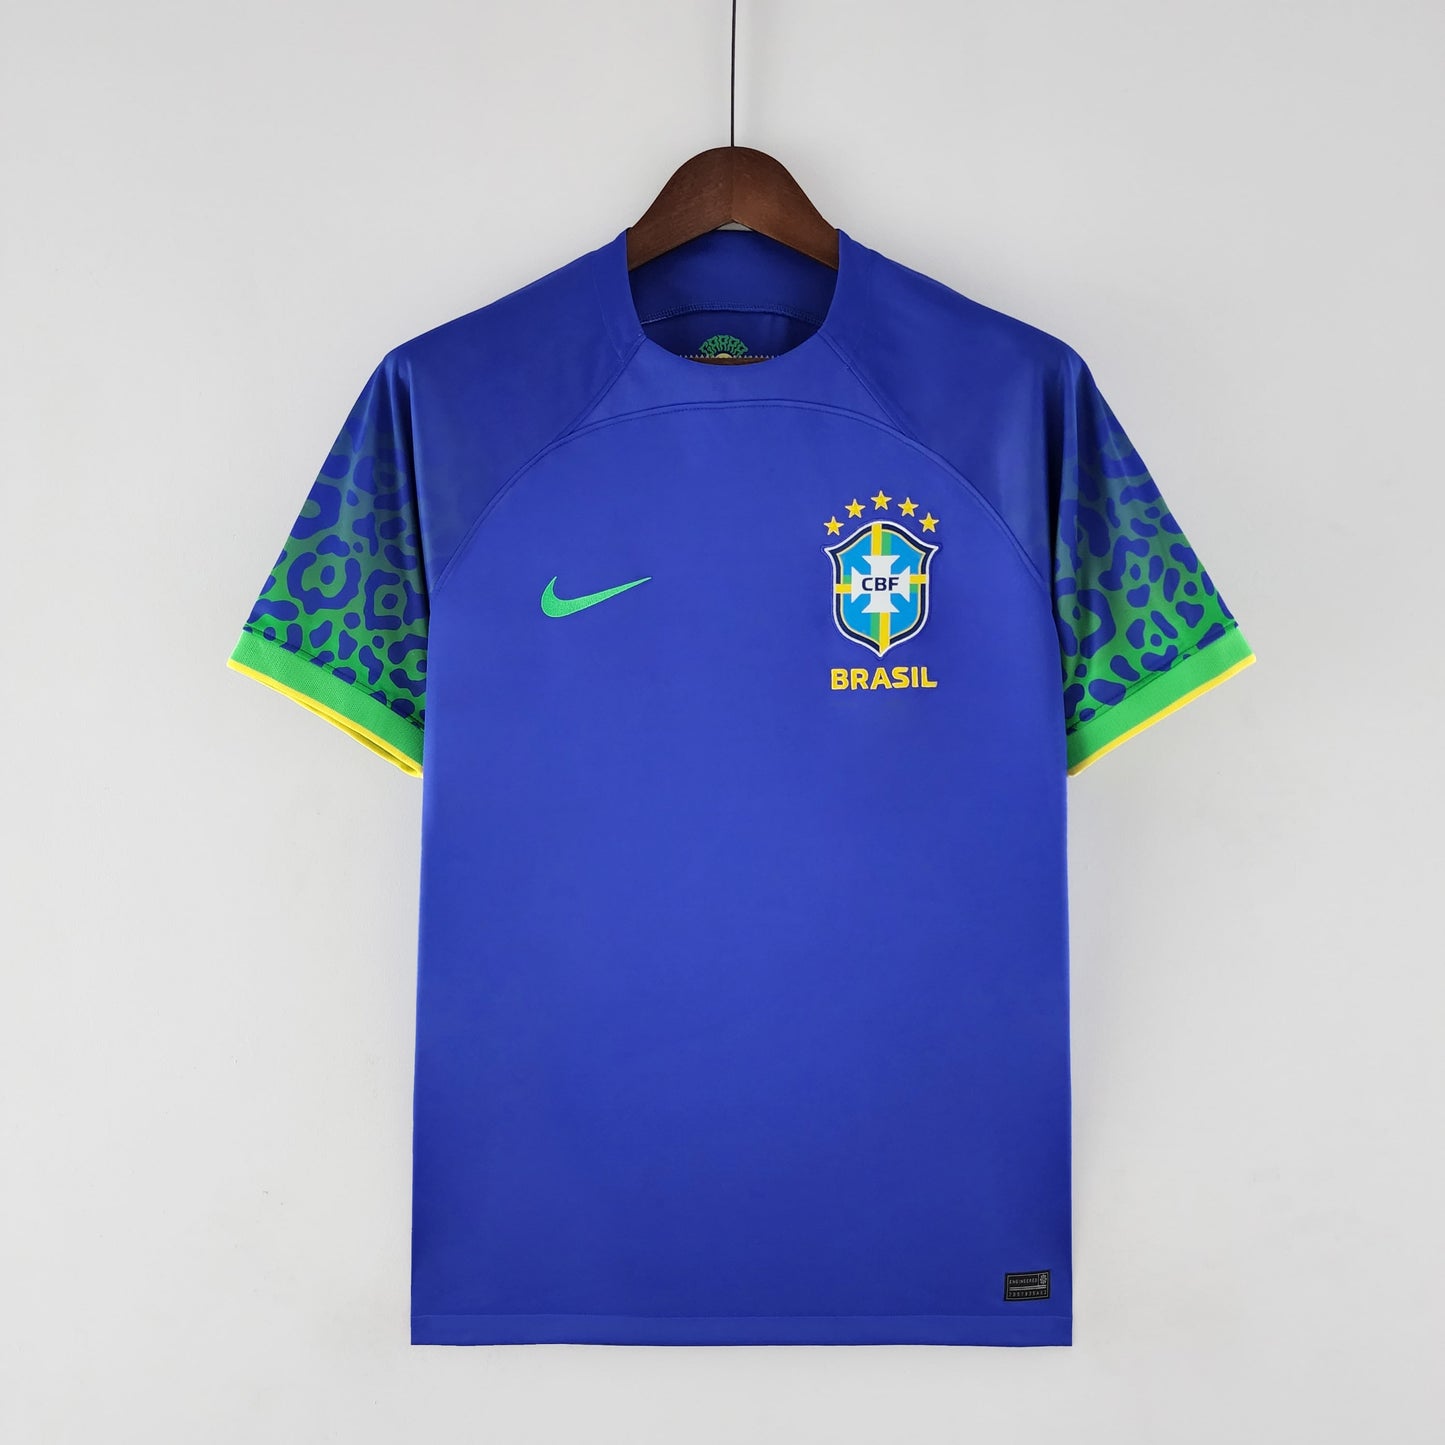 Brazilia Fan version Jersey 22/23